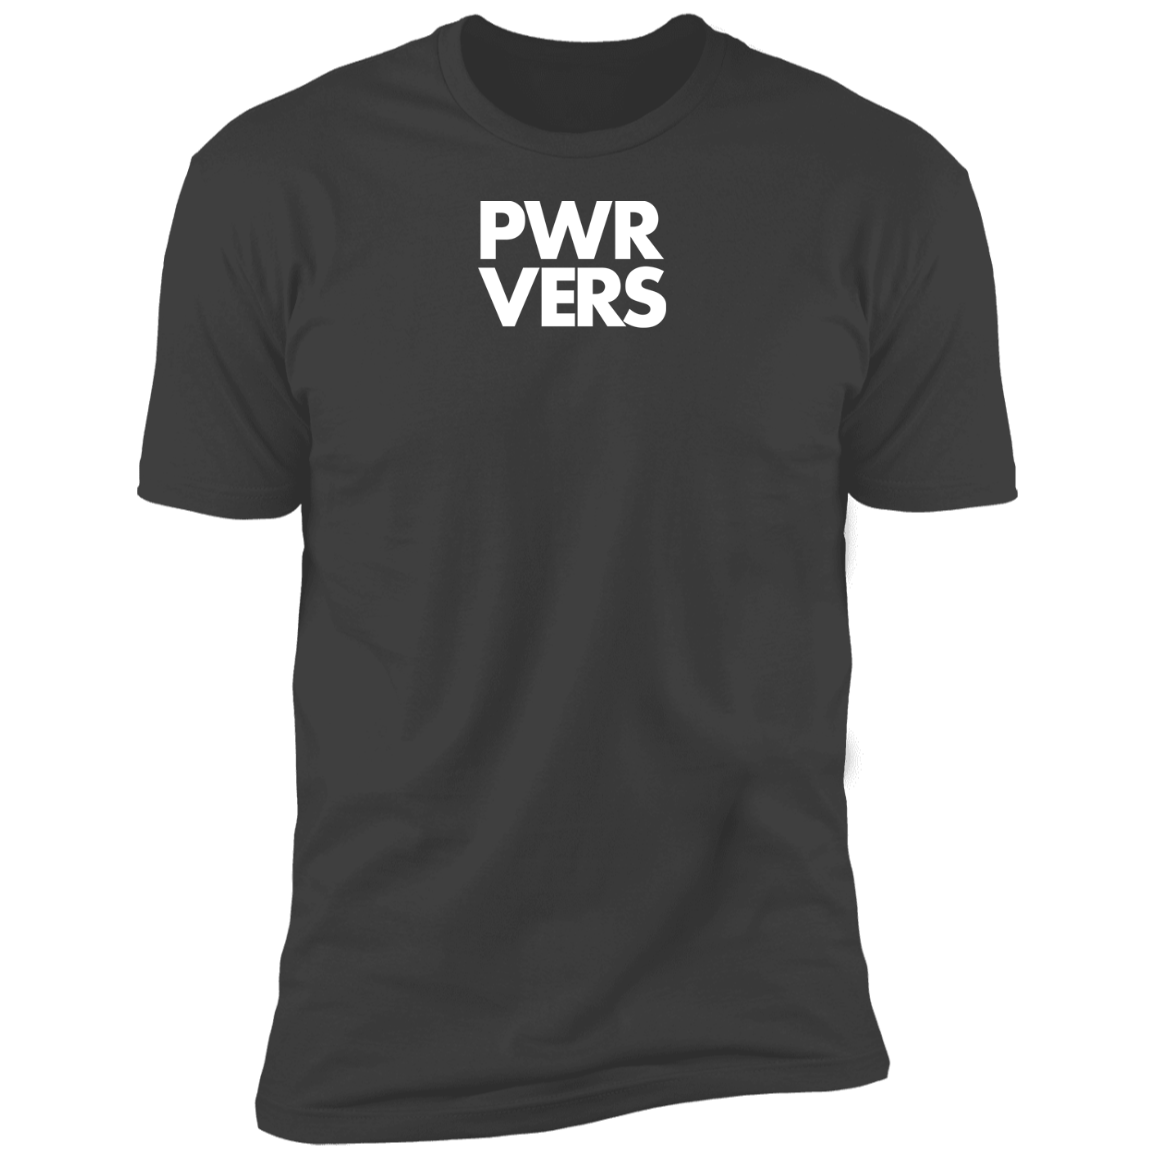 Hustler PWR VERS T-Shirt